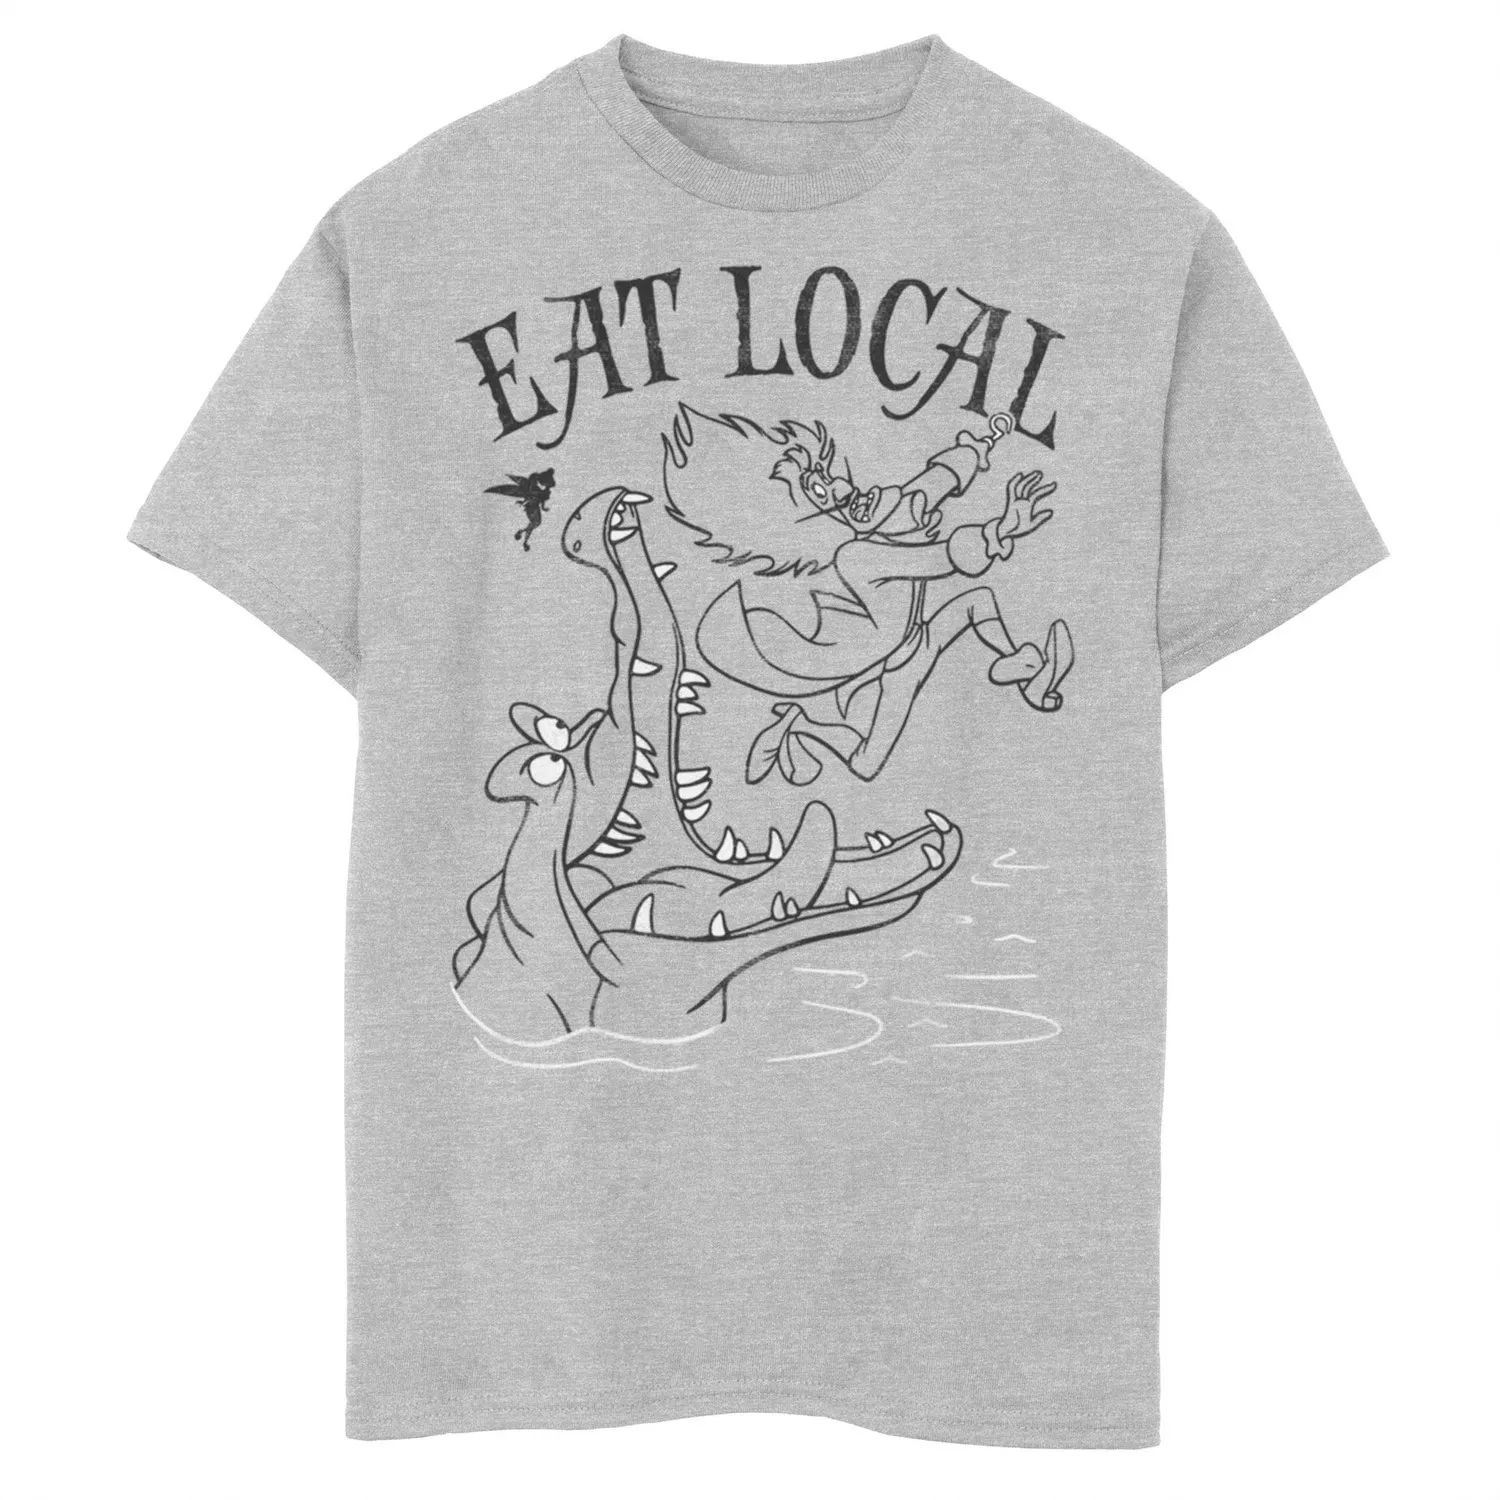 Мальчики 8–20 лет с изображением Питера Пэна Диснея едят футболку с местным рисунком Licensed Character